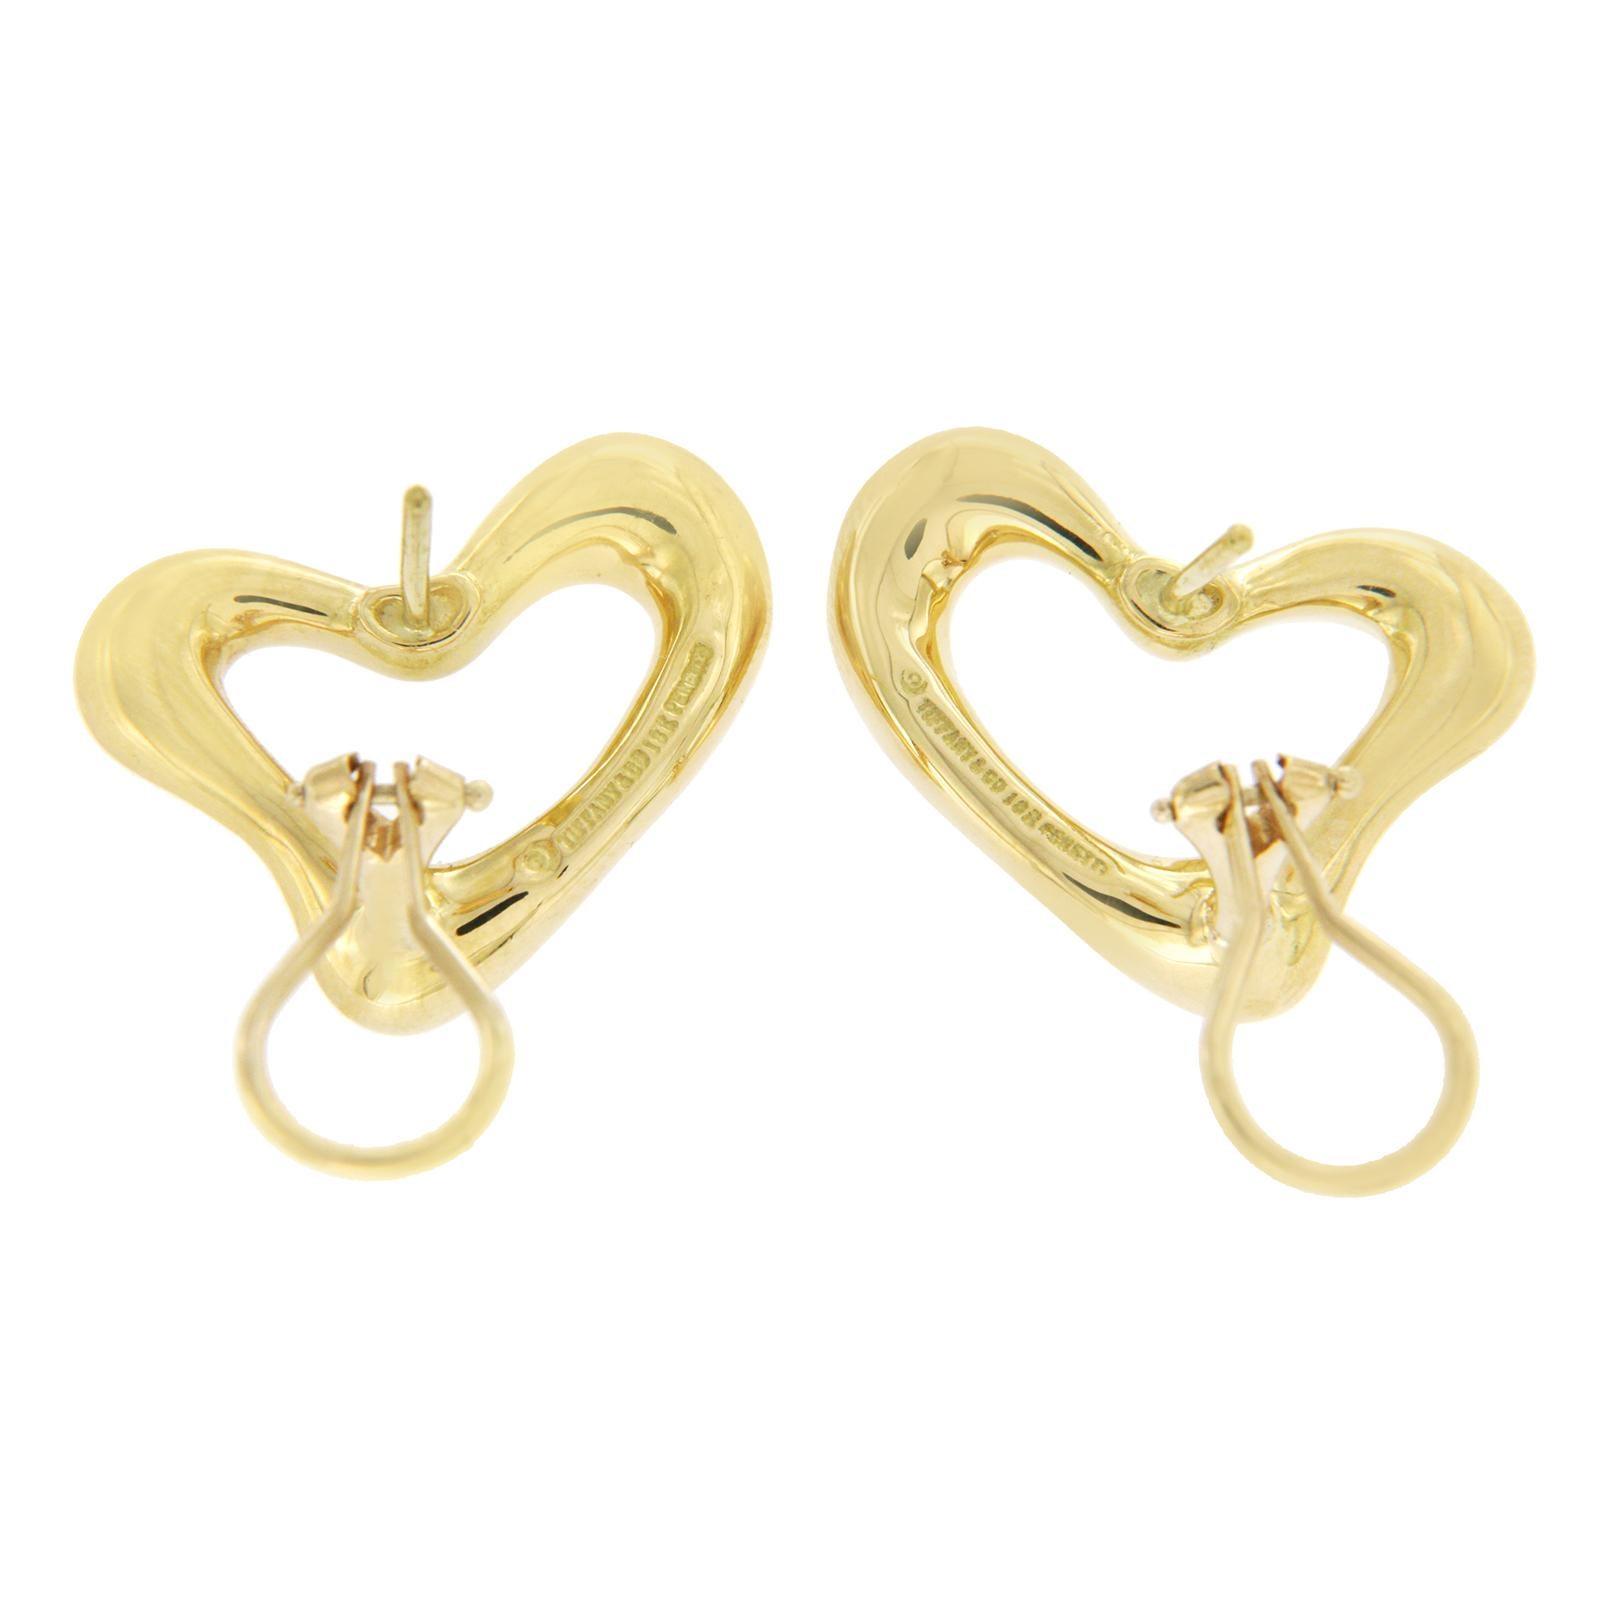 Tiffany & Co. 18 Karat Yellow Gold Elsa Peretti Open Heart Earrings 1